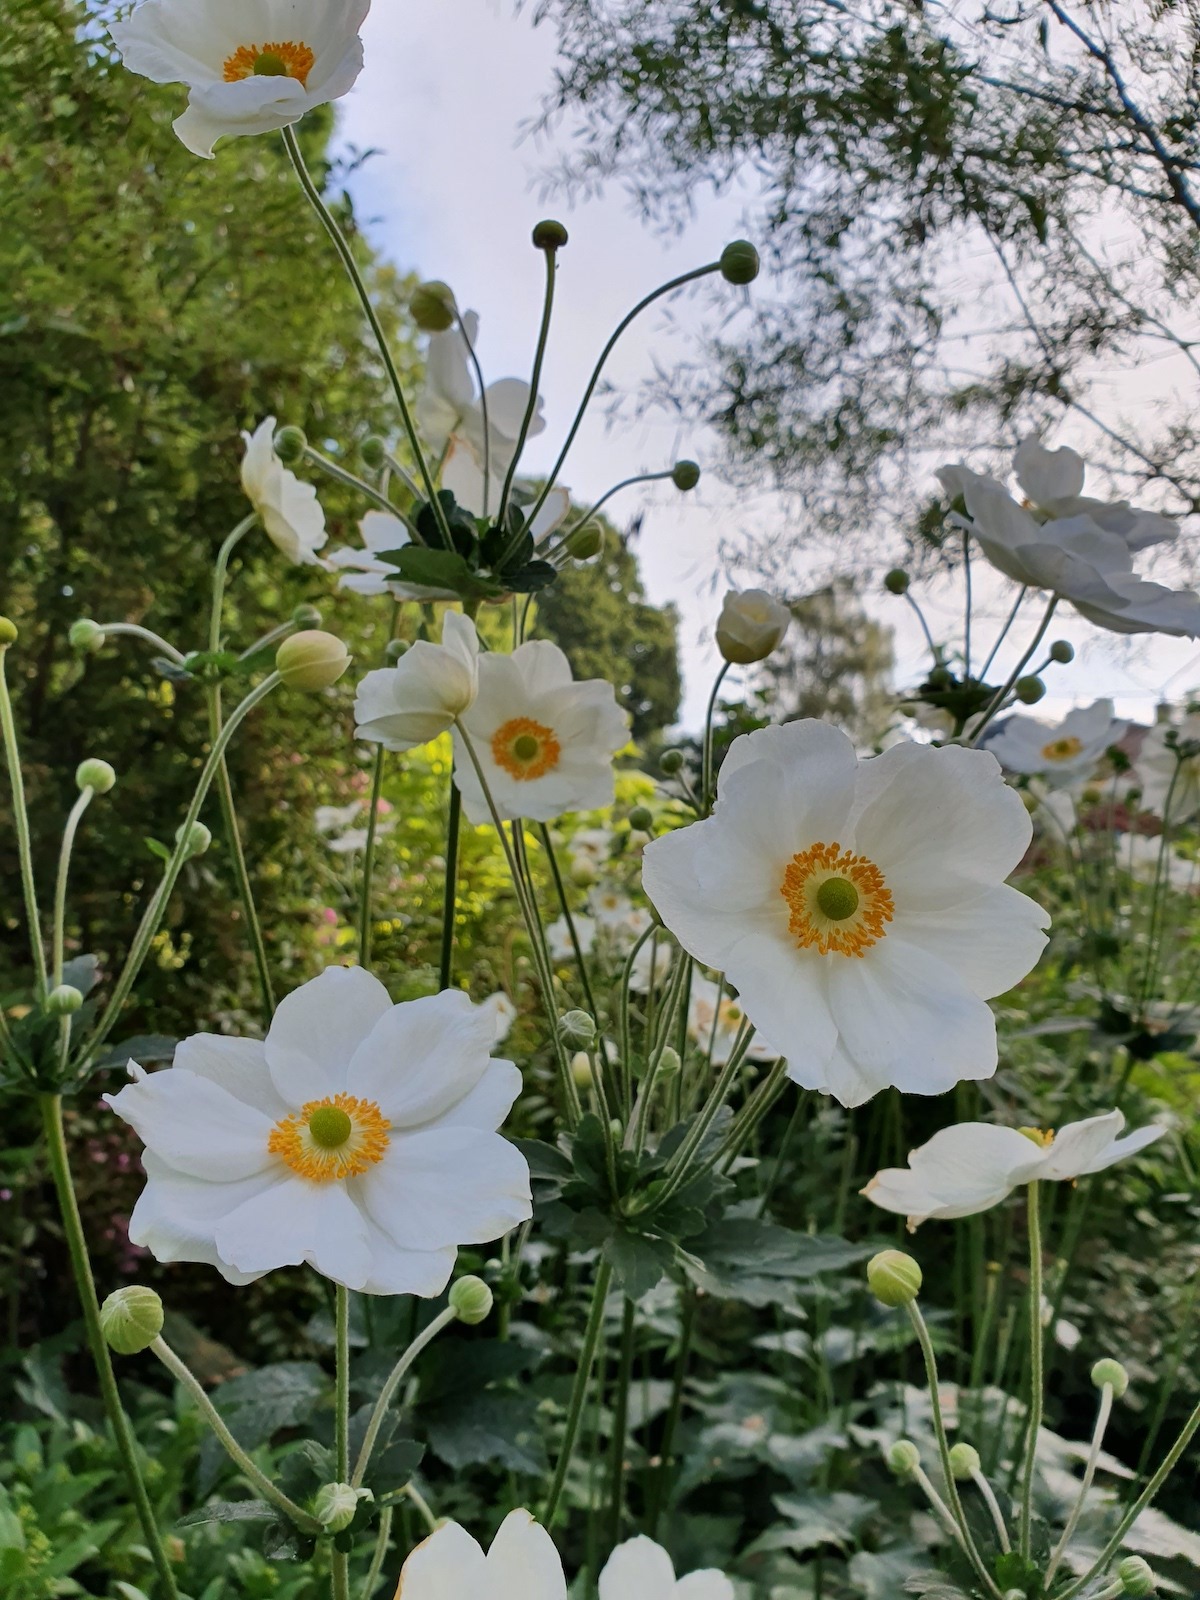 Anemone hybrid 'honorine jobert' - The Beth Chatto Gardens